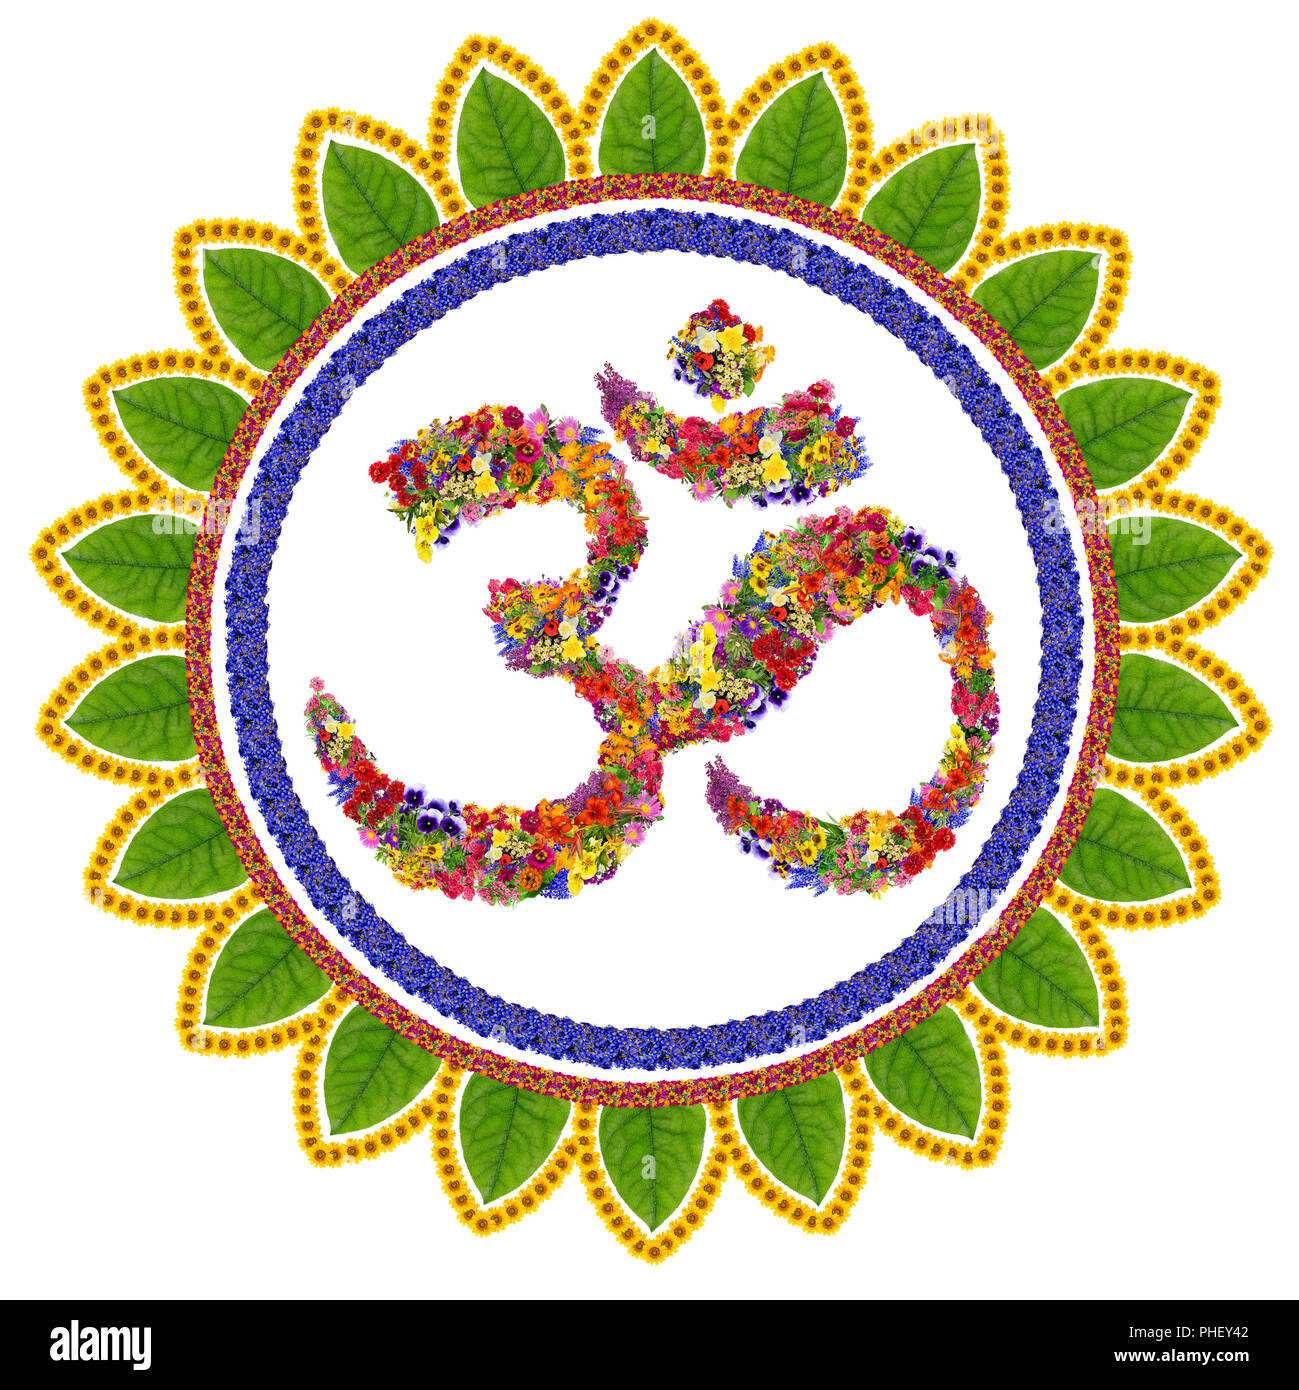 Isolated om sanskrit symbol Stock Photo